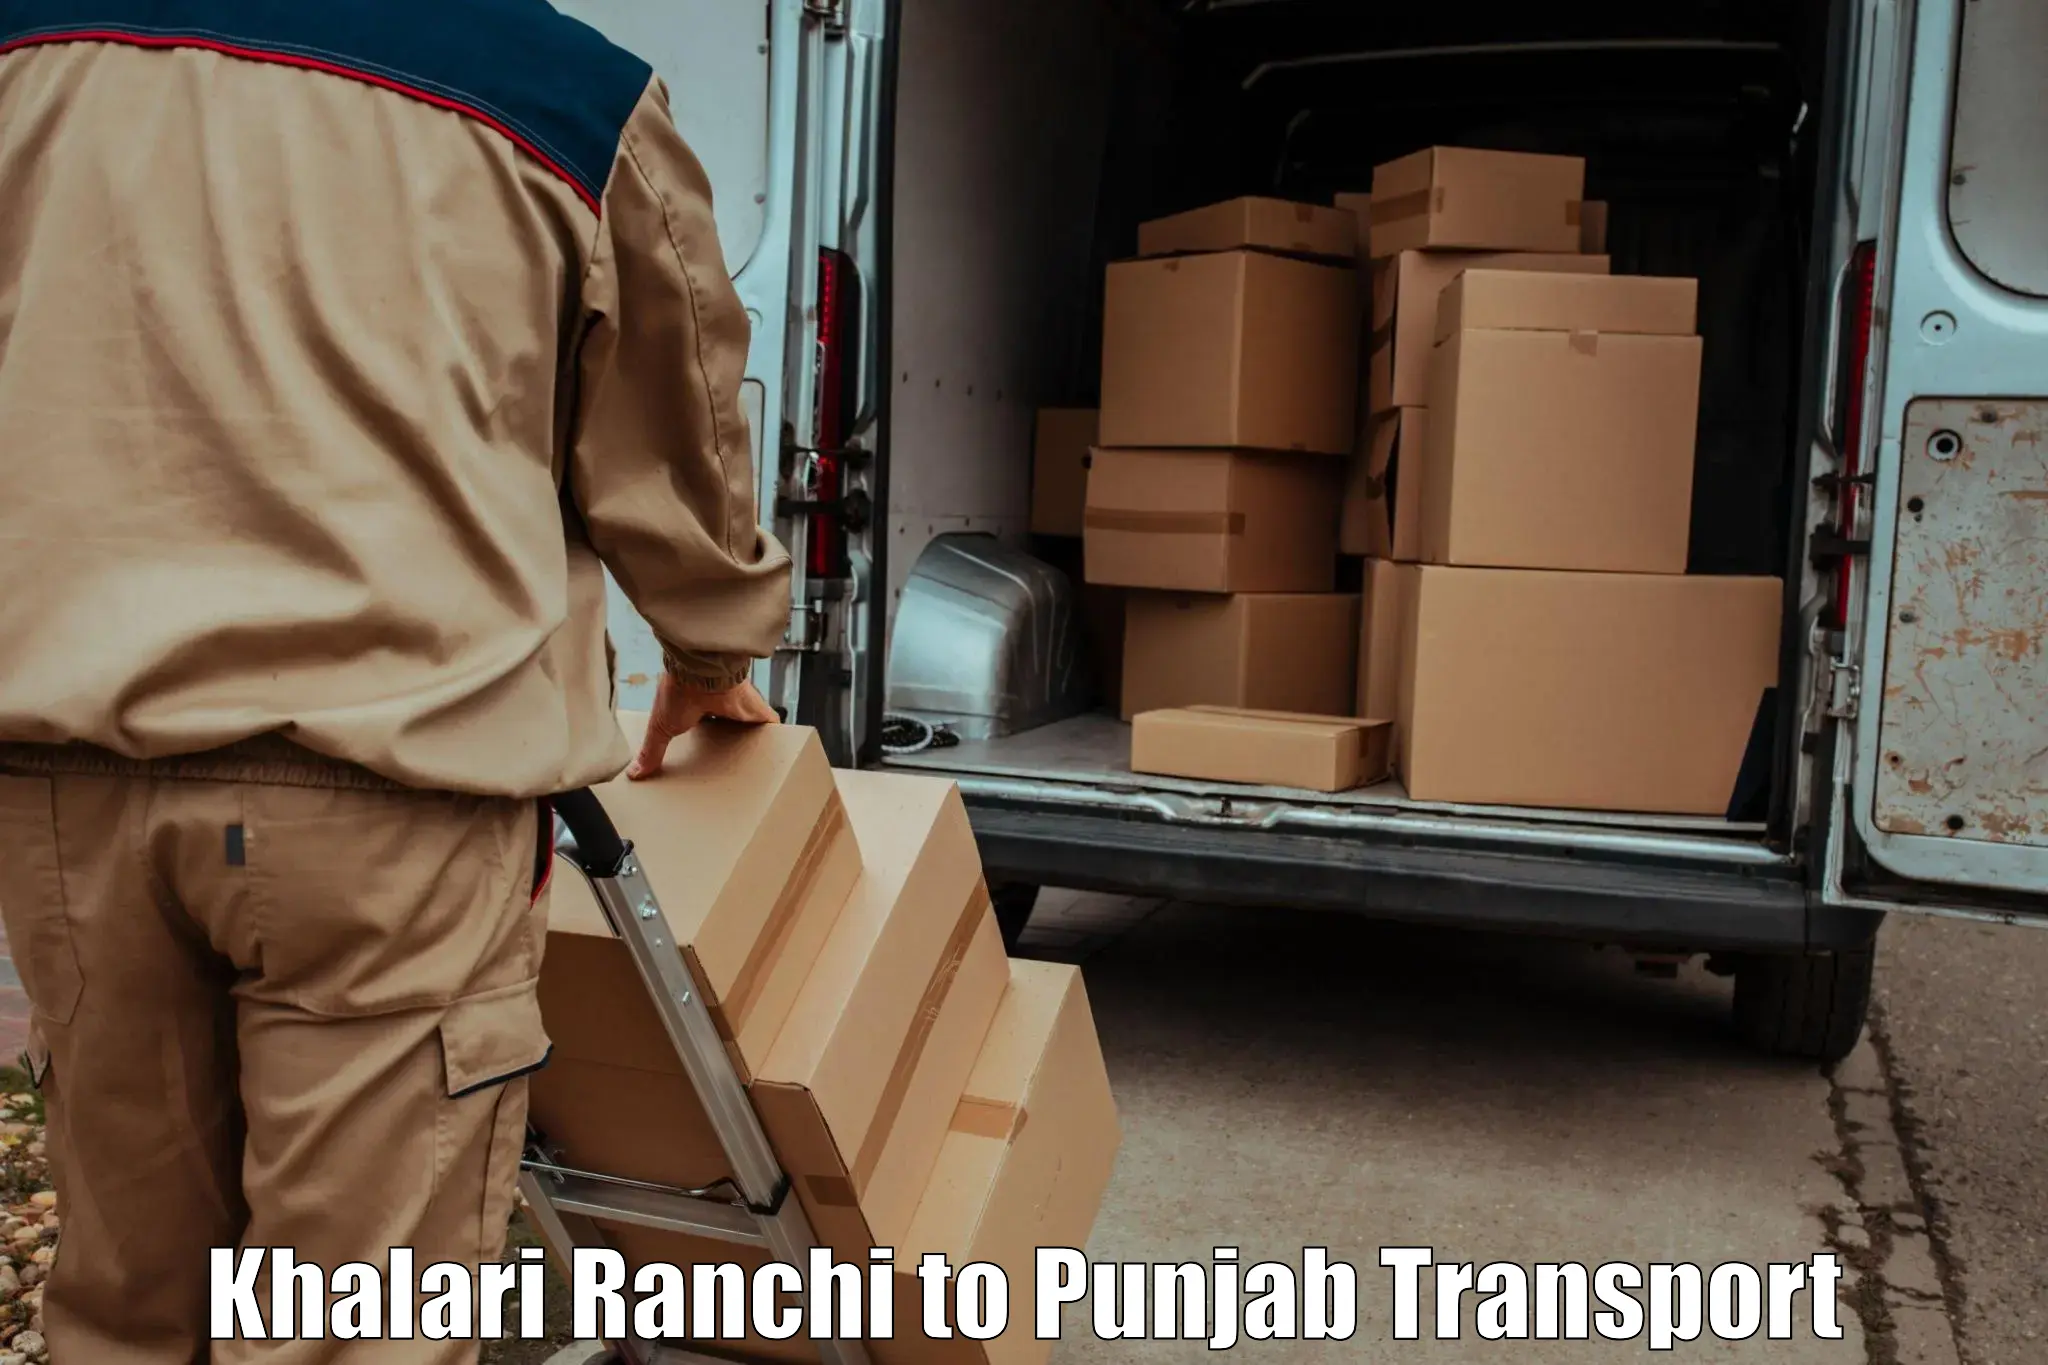 Luggage transport services Khalari Ranchi to Punjab